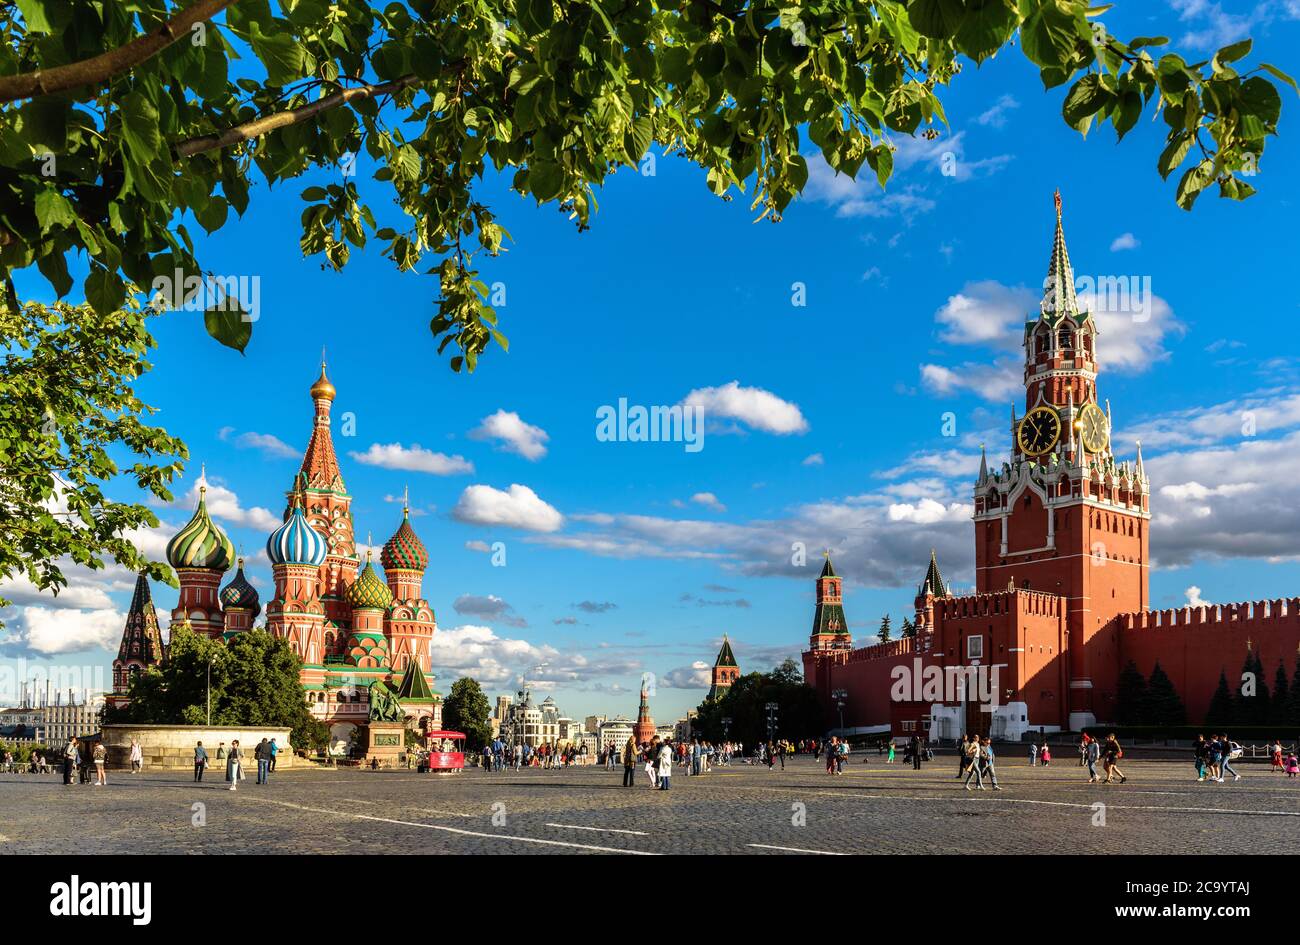 Moskau - 23. Juli 2020: Basilius`s Kathedrale und Kreml auf dem Roten Platz in Moskau, Russland. Dieser Ort ist berühmte Touristenattraktion von Moskau, Top Russi Stockfoto